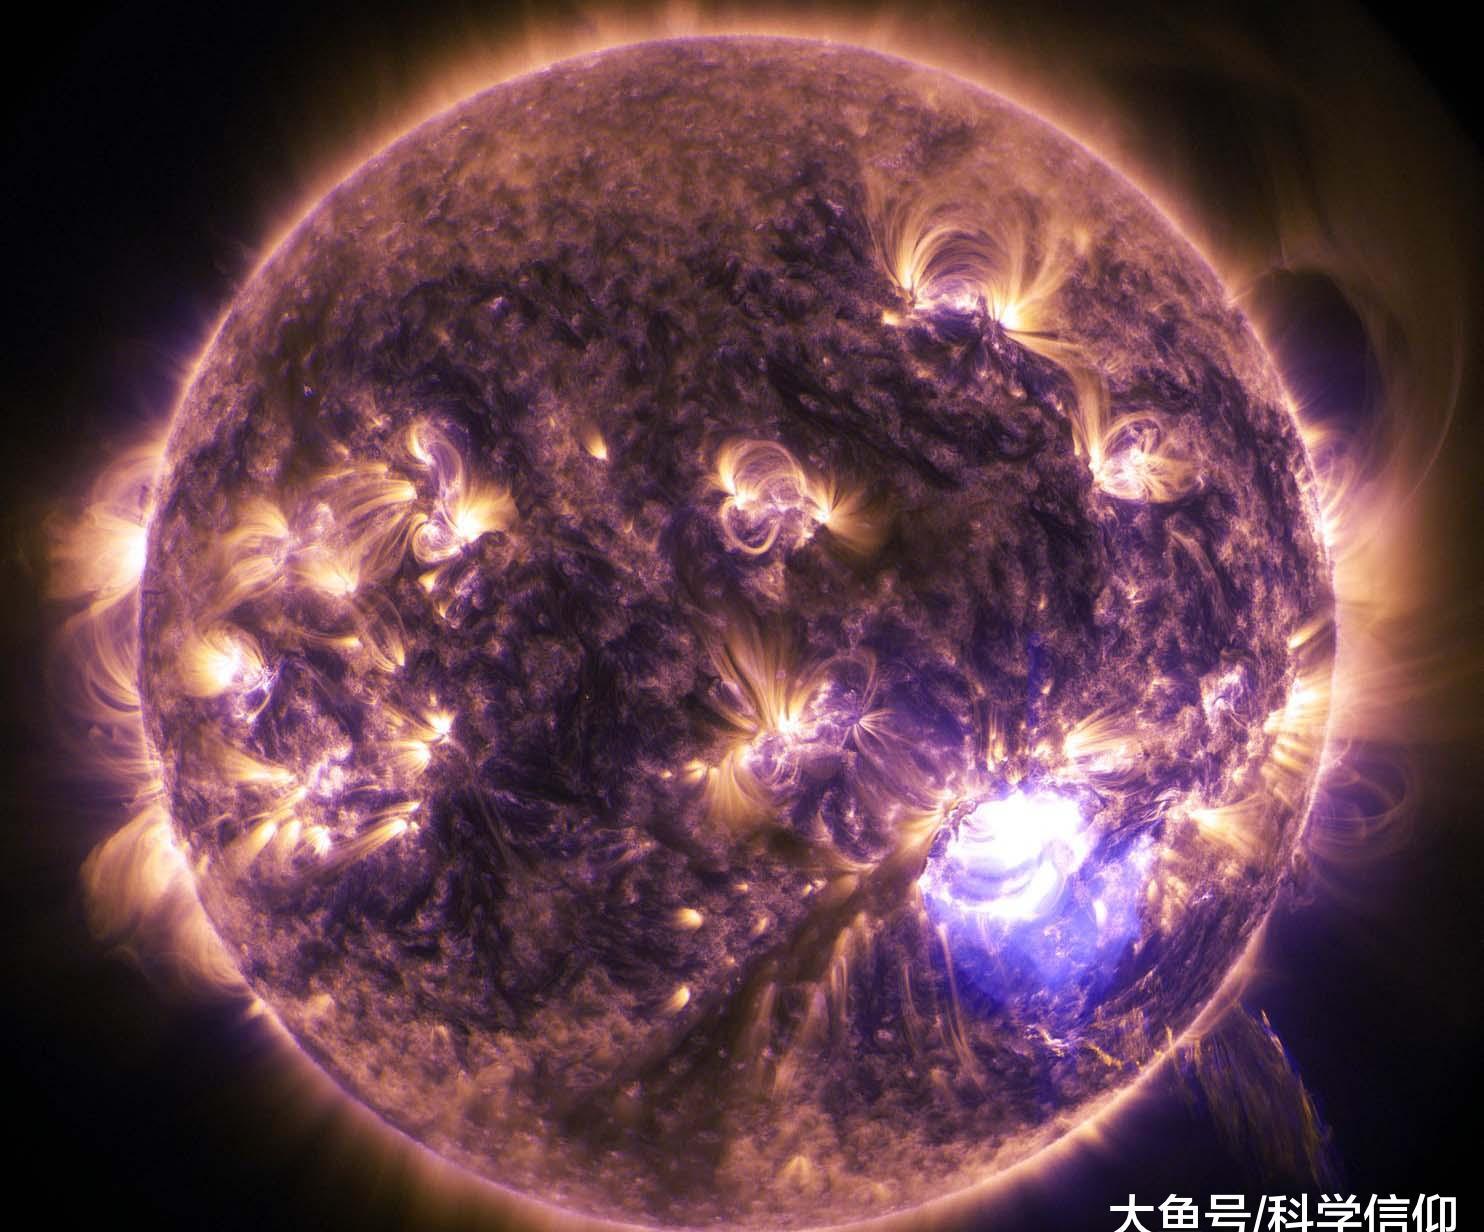 对我们来讲,太阳的庞大是超乎想象的,而在宇宙之中,太阳真的只是一个